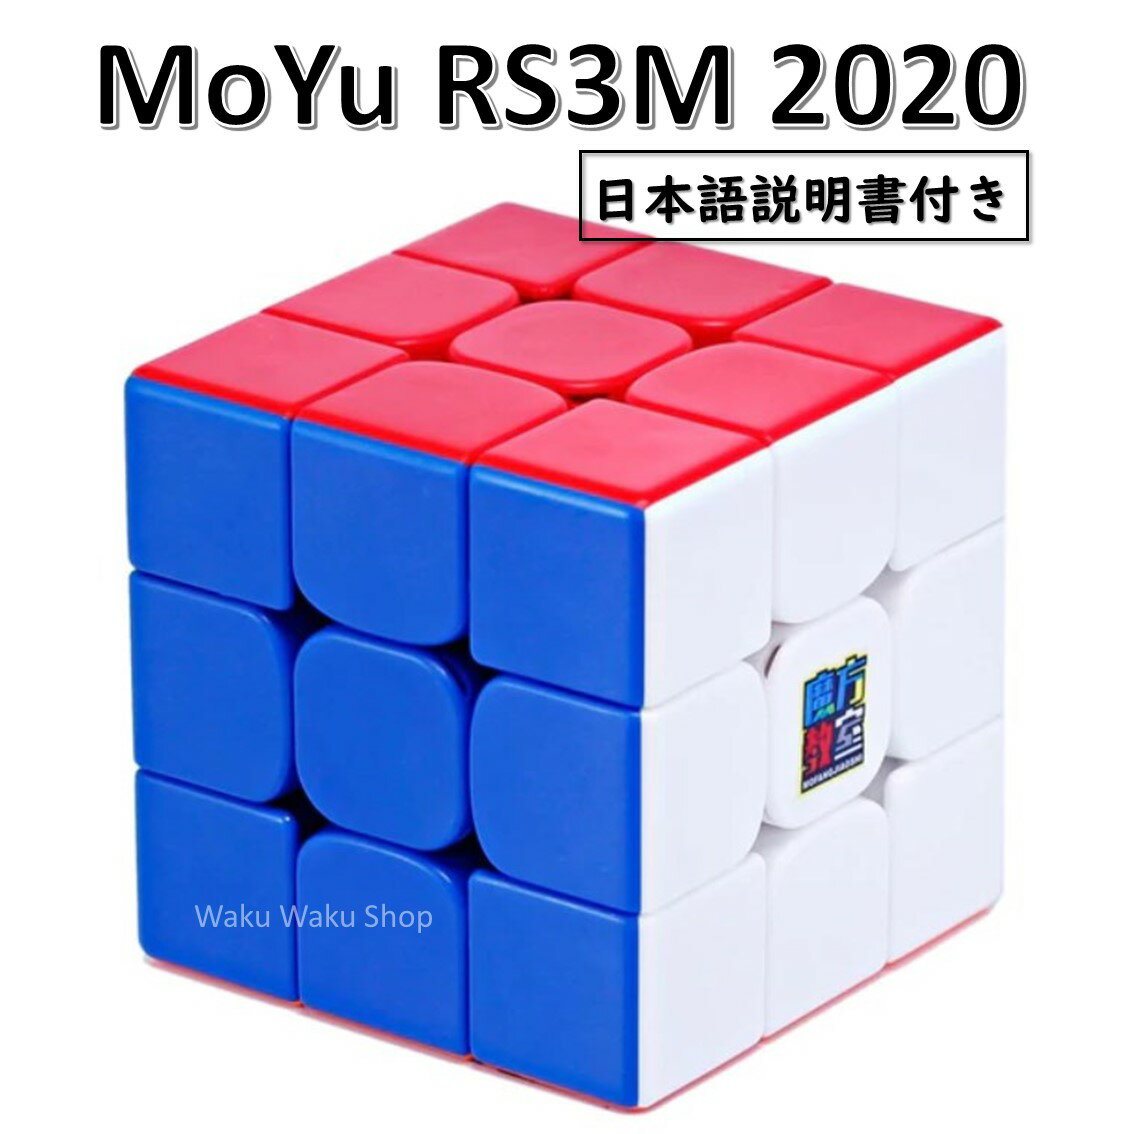 【日本語説明書付き】 【安心の保証付き】 【正規販売店】 Moyu Cubing Classroom RS3M 2020 磁石搭載 3x3x3キューブ ステッカーレス ルービックキューブ おすすめ なめらか 1